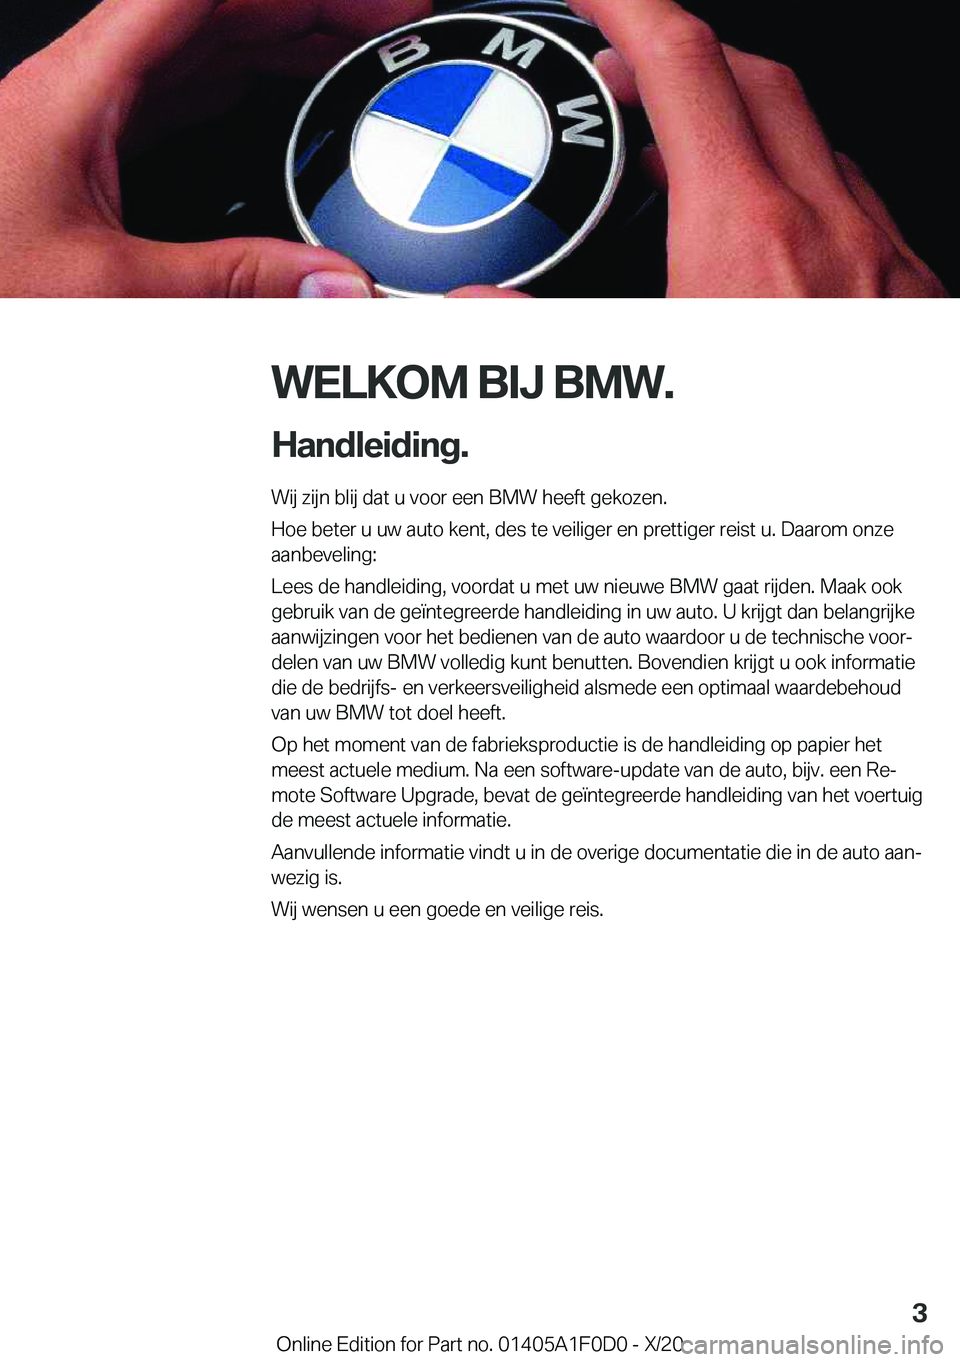 BMW X6 2021  Instructieboekjes (in Dutch) �W�E�L�K�O�M��B�I�J��B�M�W�.
�H�a�n�d�l�e�i�d�i�n�g�. �W�i�j��z�i�j�n��b�l�i�j��d�a�t��u��v�o�o�r��e�e�n��B�M�W��h�e�e�f�t��g�e�k�o�z�e�n�.
�H�o�e��b�e�t�e�r��u��u�w��a�u�t�o��k�e�n�t�